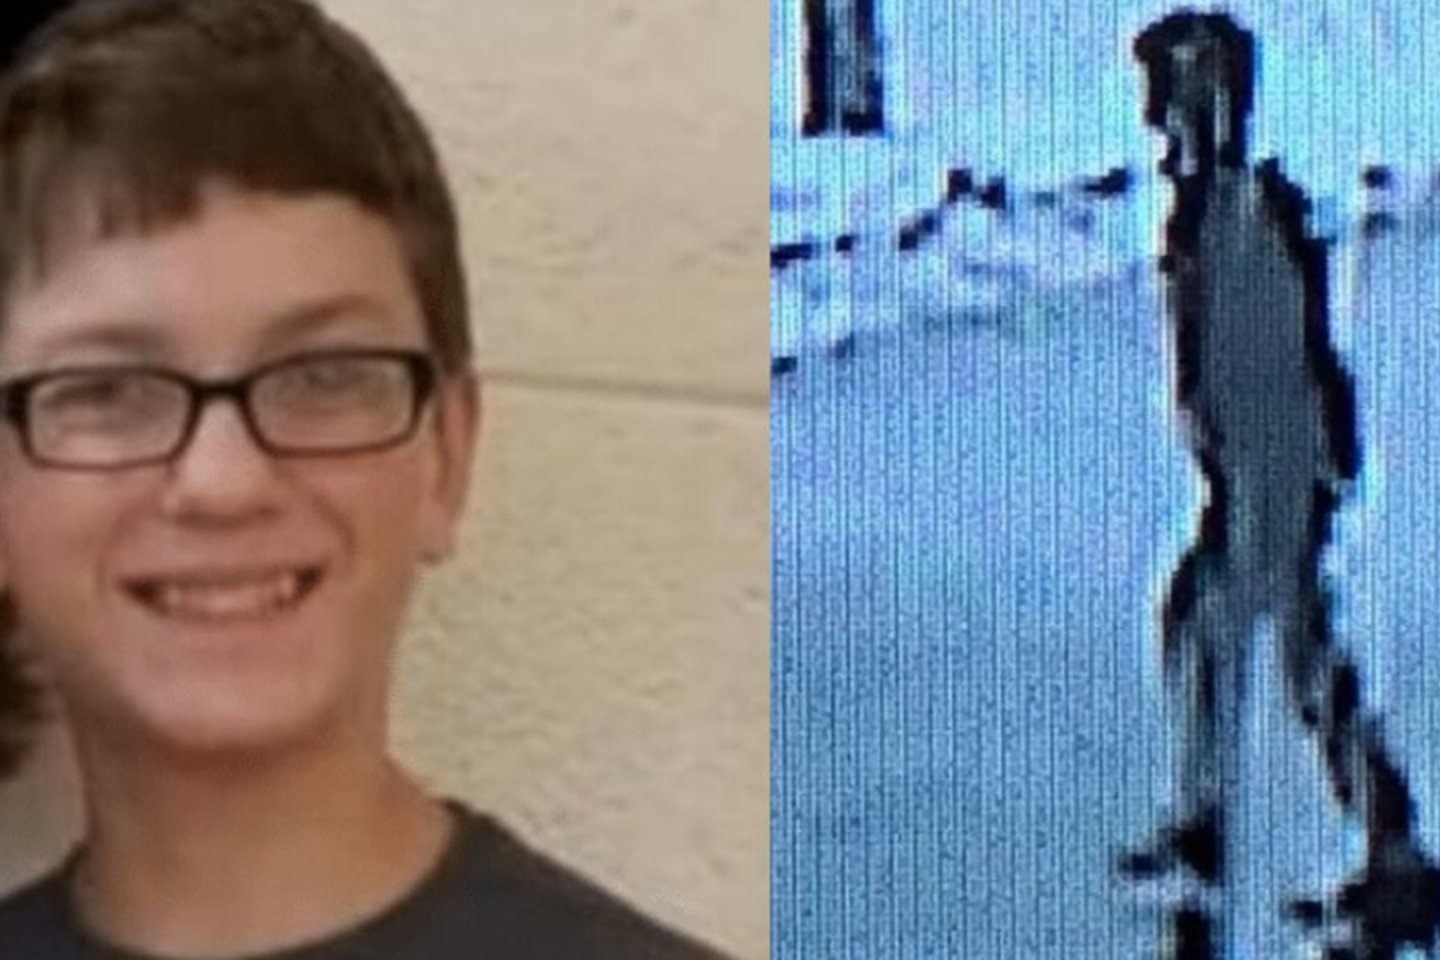   Prabėgus mėnesiui po to, kai buvo paskelbta apie 14 metų berniuko Harlio Dilly dingimą, Ohajo valstijos policija pranešė, kad berniuko kūną rado netikėtoje vietoje – kamine.<br>Port Clintono policijos departamento nuotr.